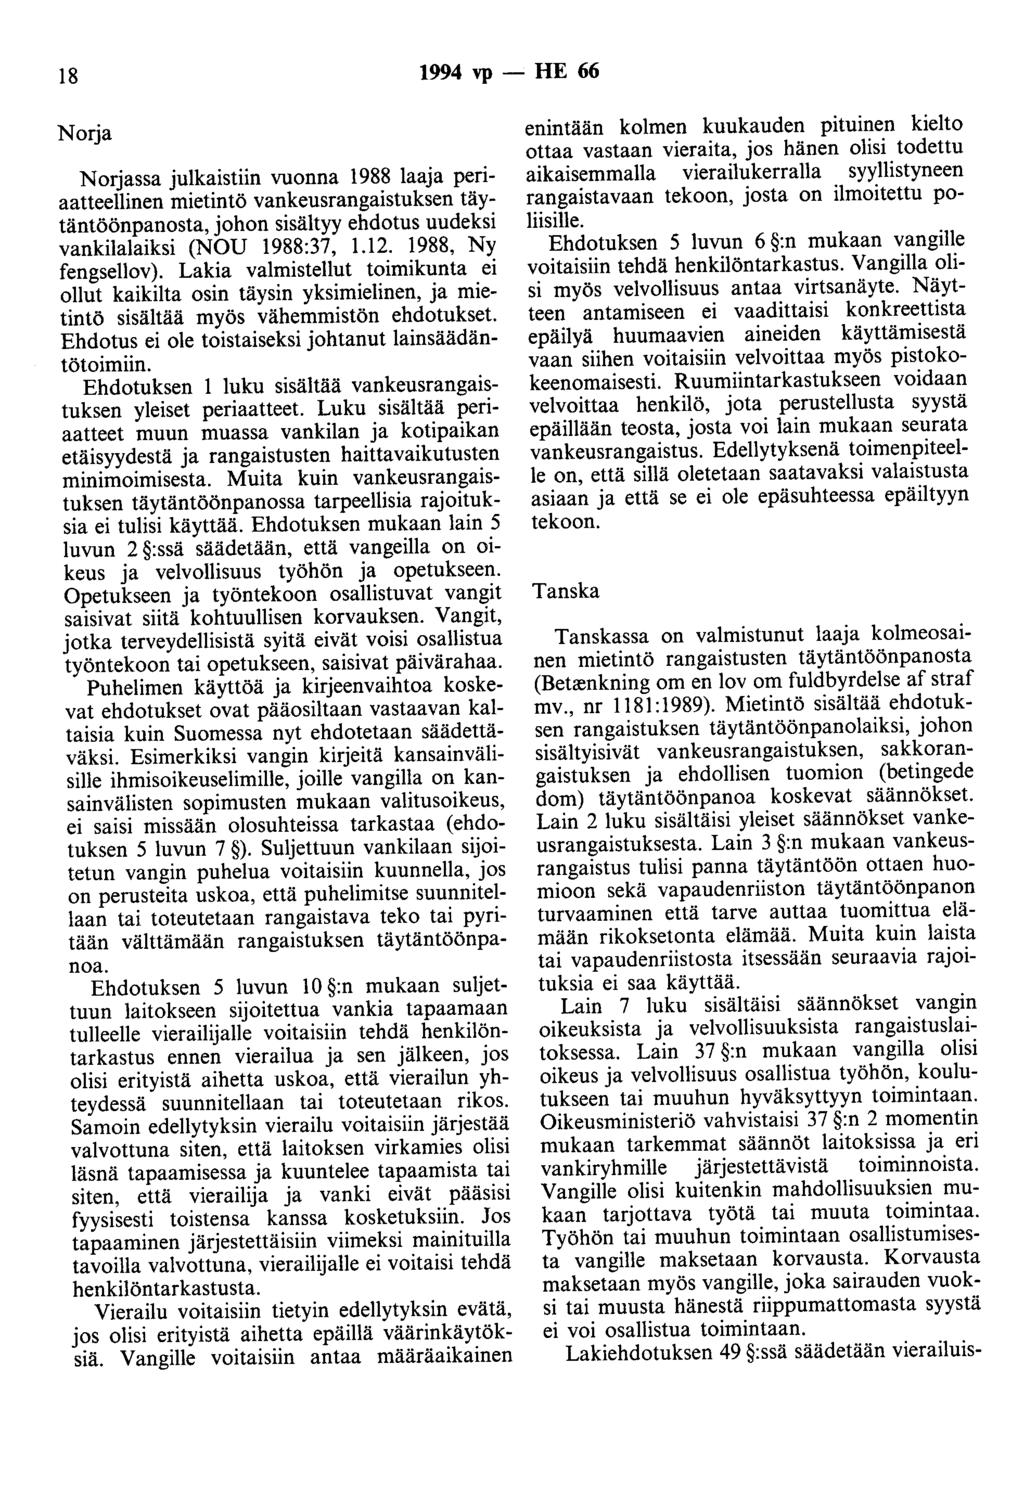 18 1994 vp - HE 66 Norja Norjassa julkaistiin vuonna 1988 laaja periaatteellinen mietintö vankeusrangaistuksen täytäntöönpanosta, johon sisältyy ehdotus uudeksi vankilalaiksi (NOU 1988:37, 1.12.